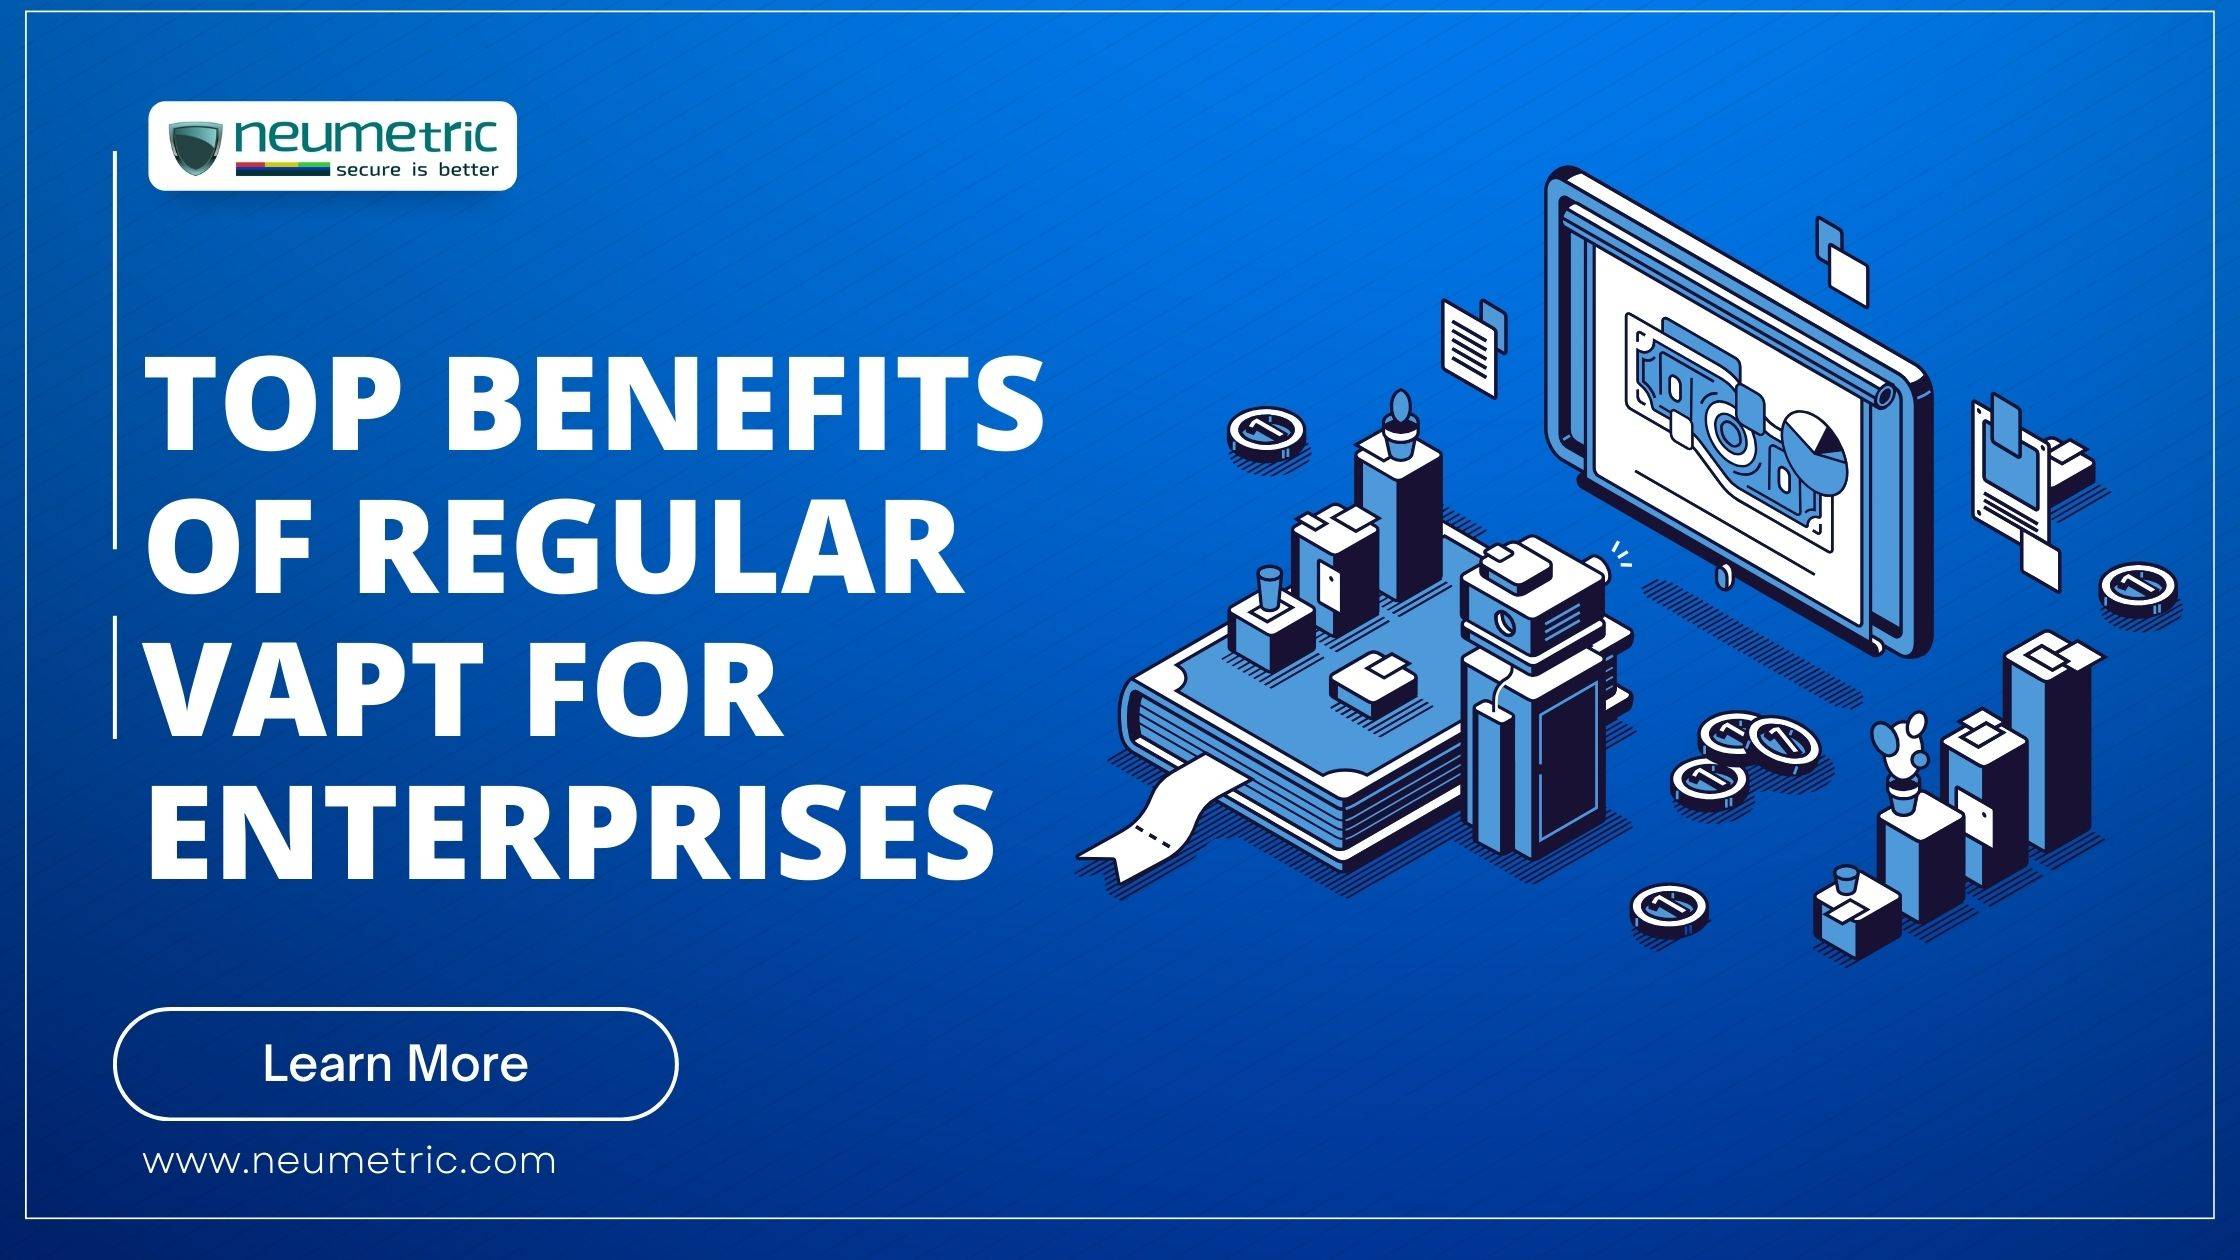 Top Benefits of Regular VAPT for Enterprises